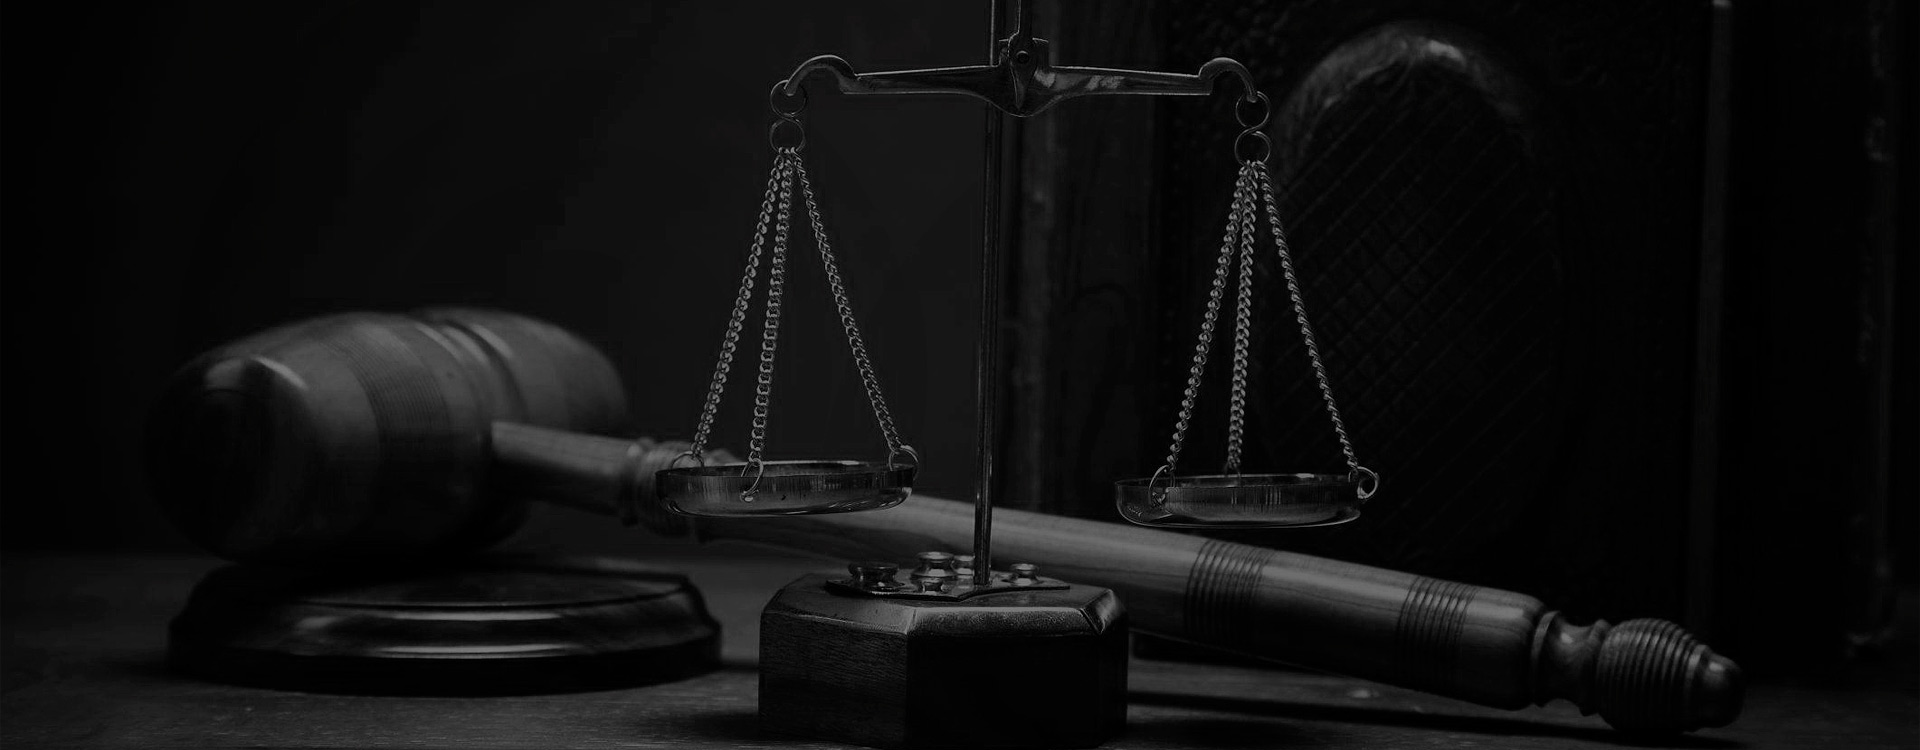 Derecho civil - Categoría del Blog - Aequitas Legis Abogados